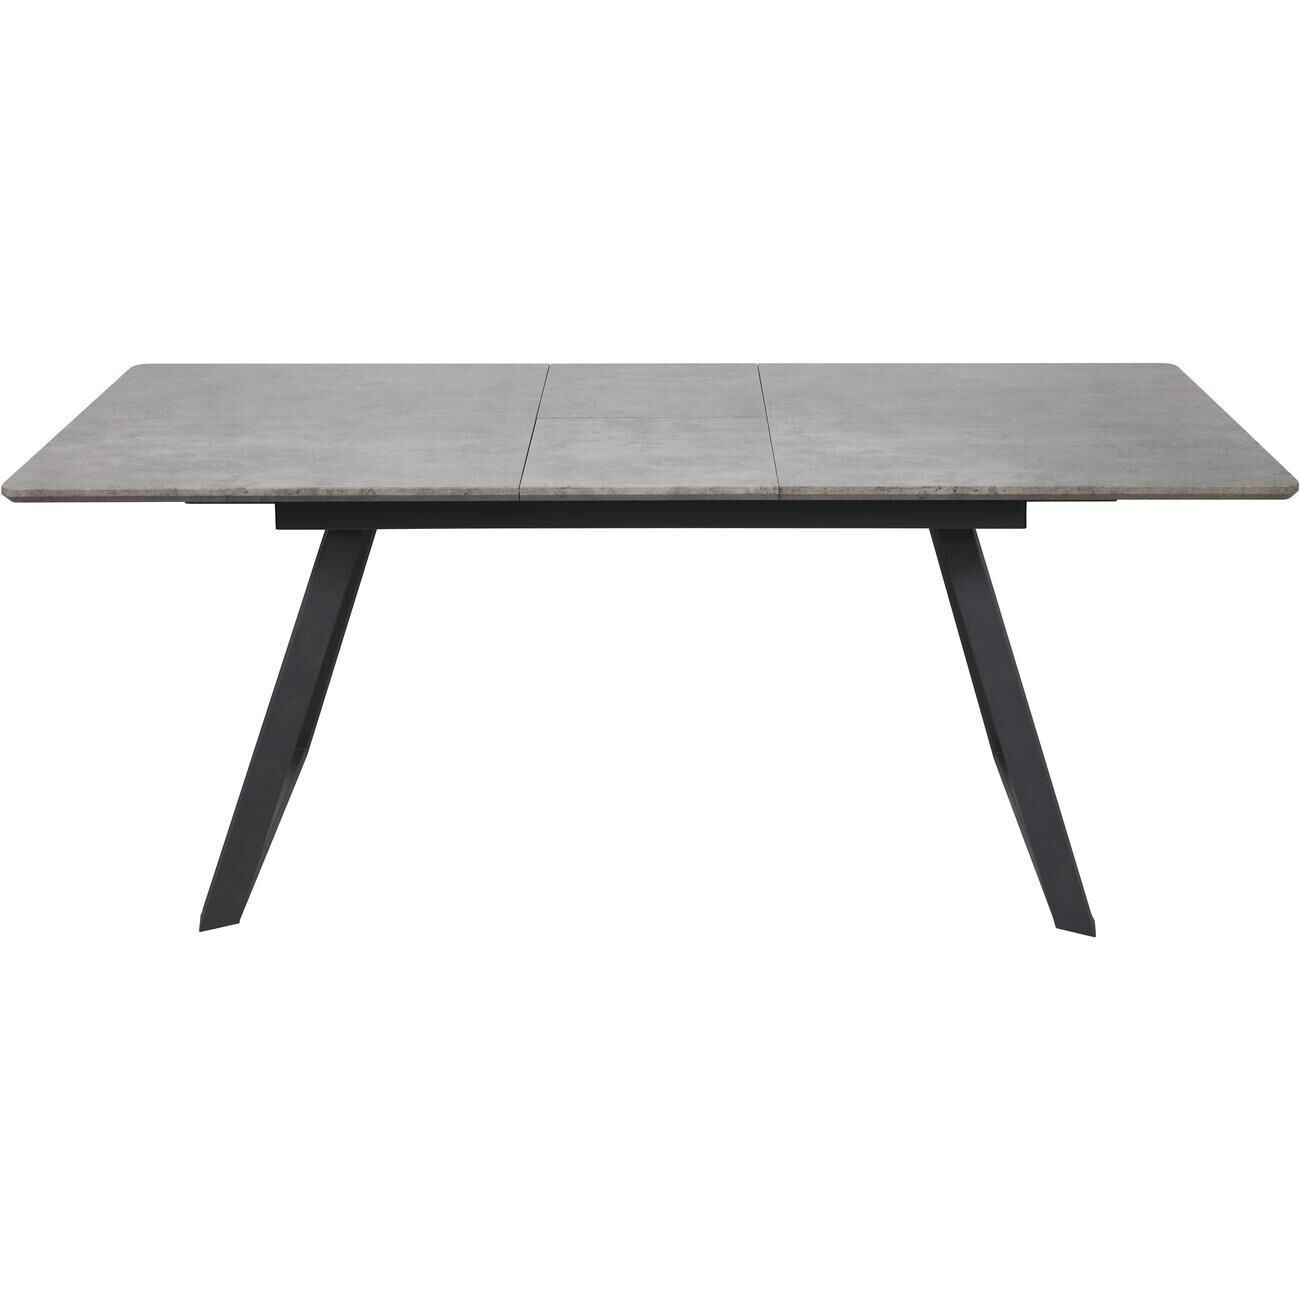 ATHM DESIGN Table de repas extensible gris plateau bois pieds métal